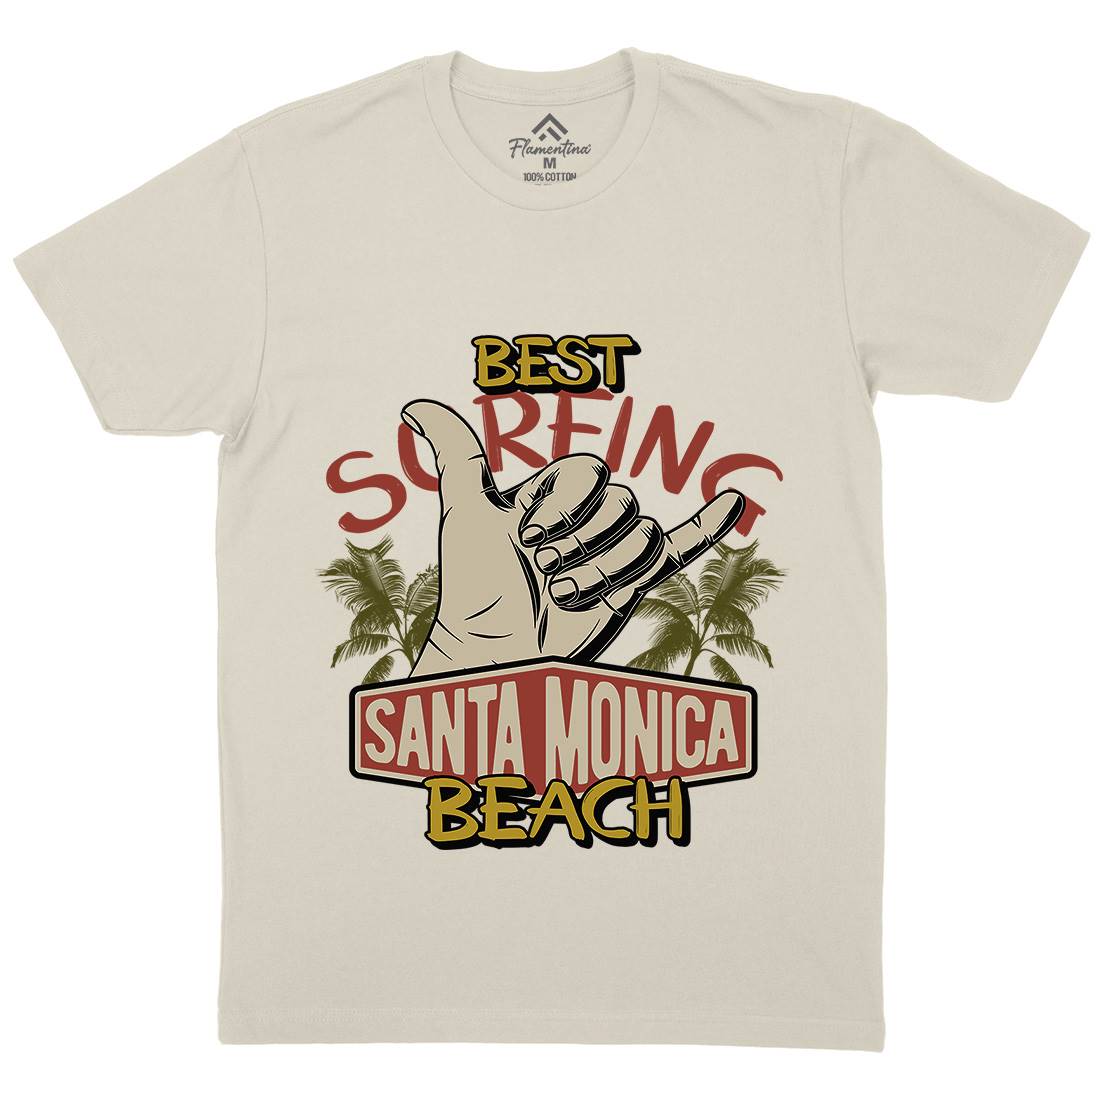 Best Surfing Beach Mens Organic Crew Neck T-Shirt Surf D909